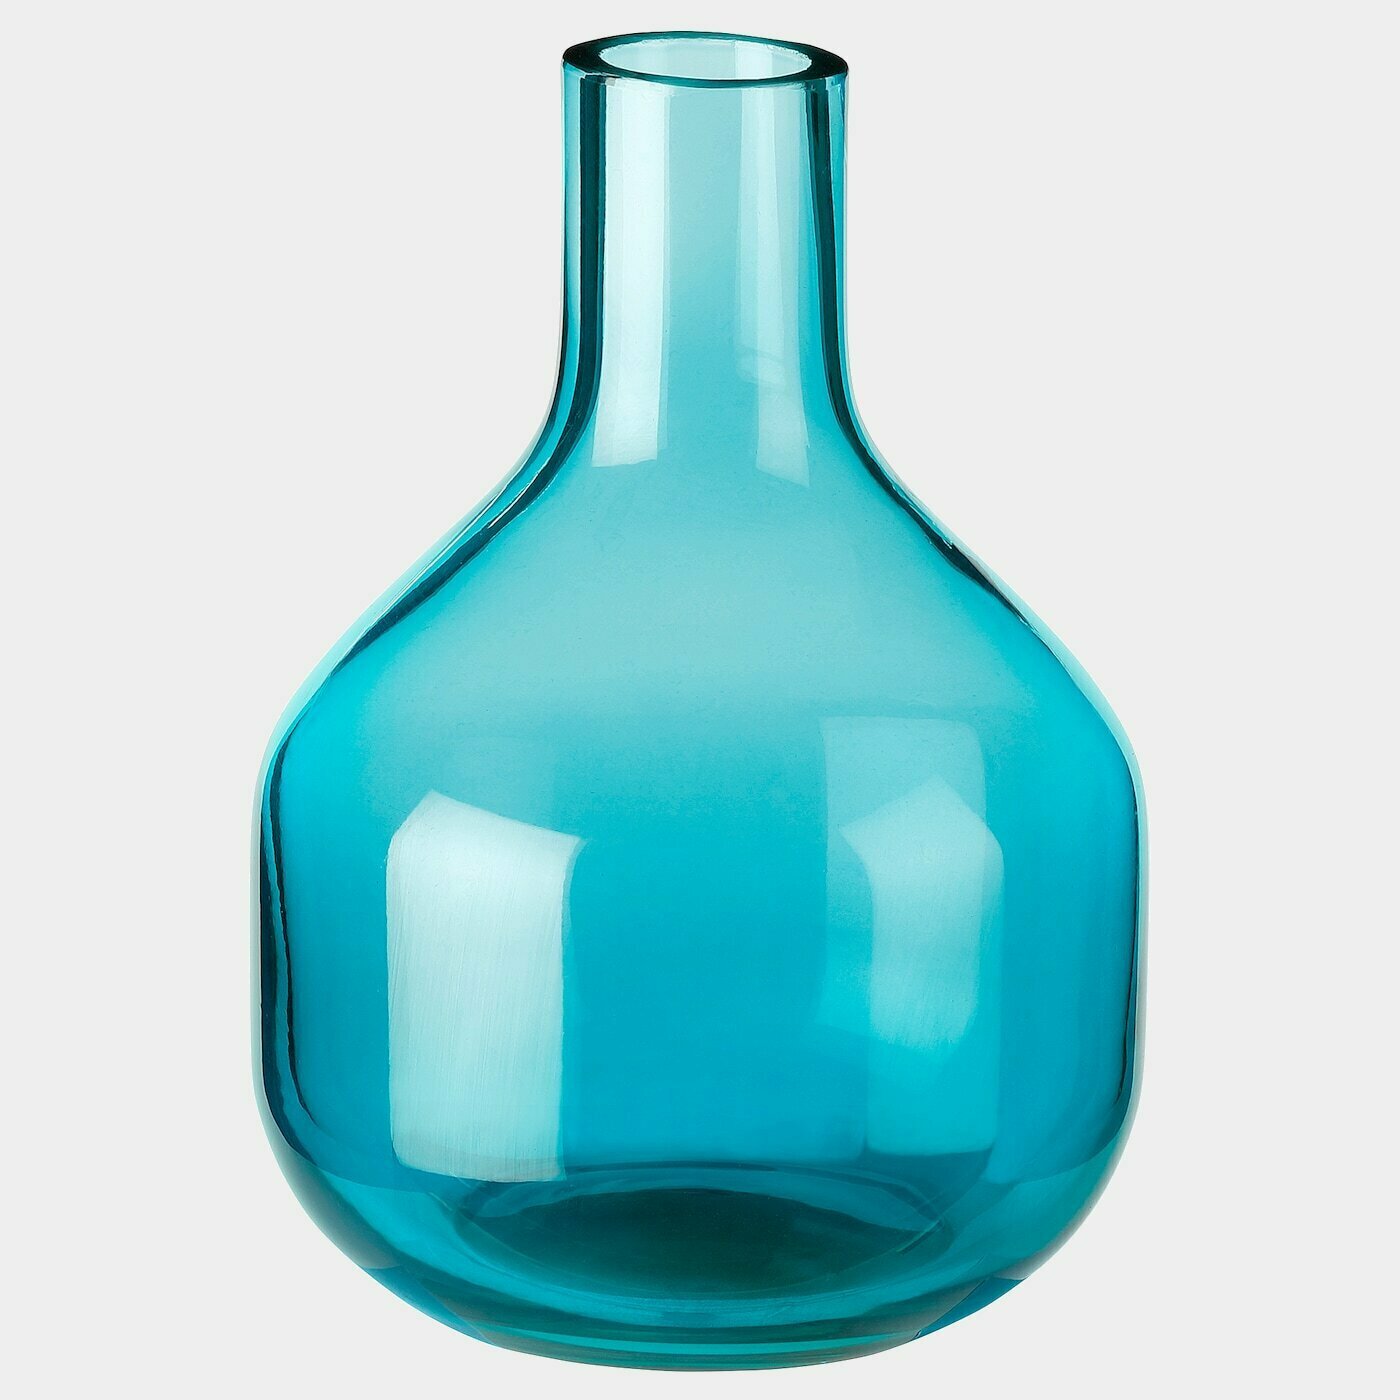 UPPGJORD Vase  -  - Möbel Ideen für dein Zuhause von Home Trends. Möbel Trends von Social Media Influencer für dein Skandi Zuhause.